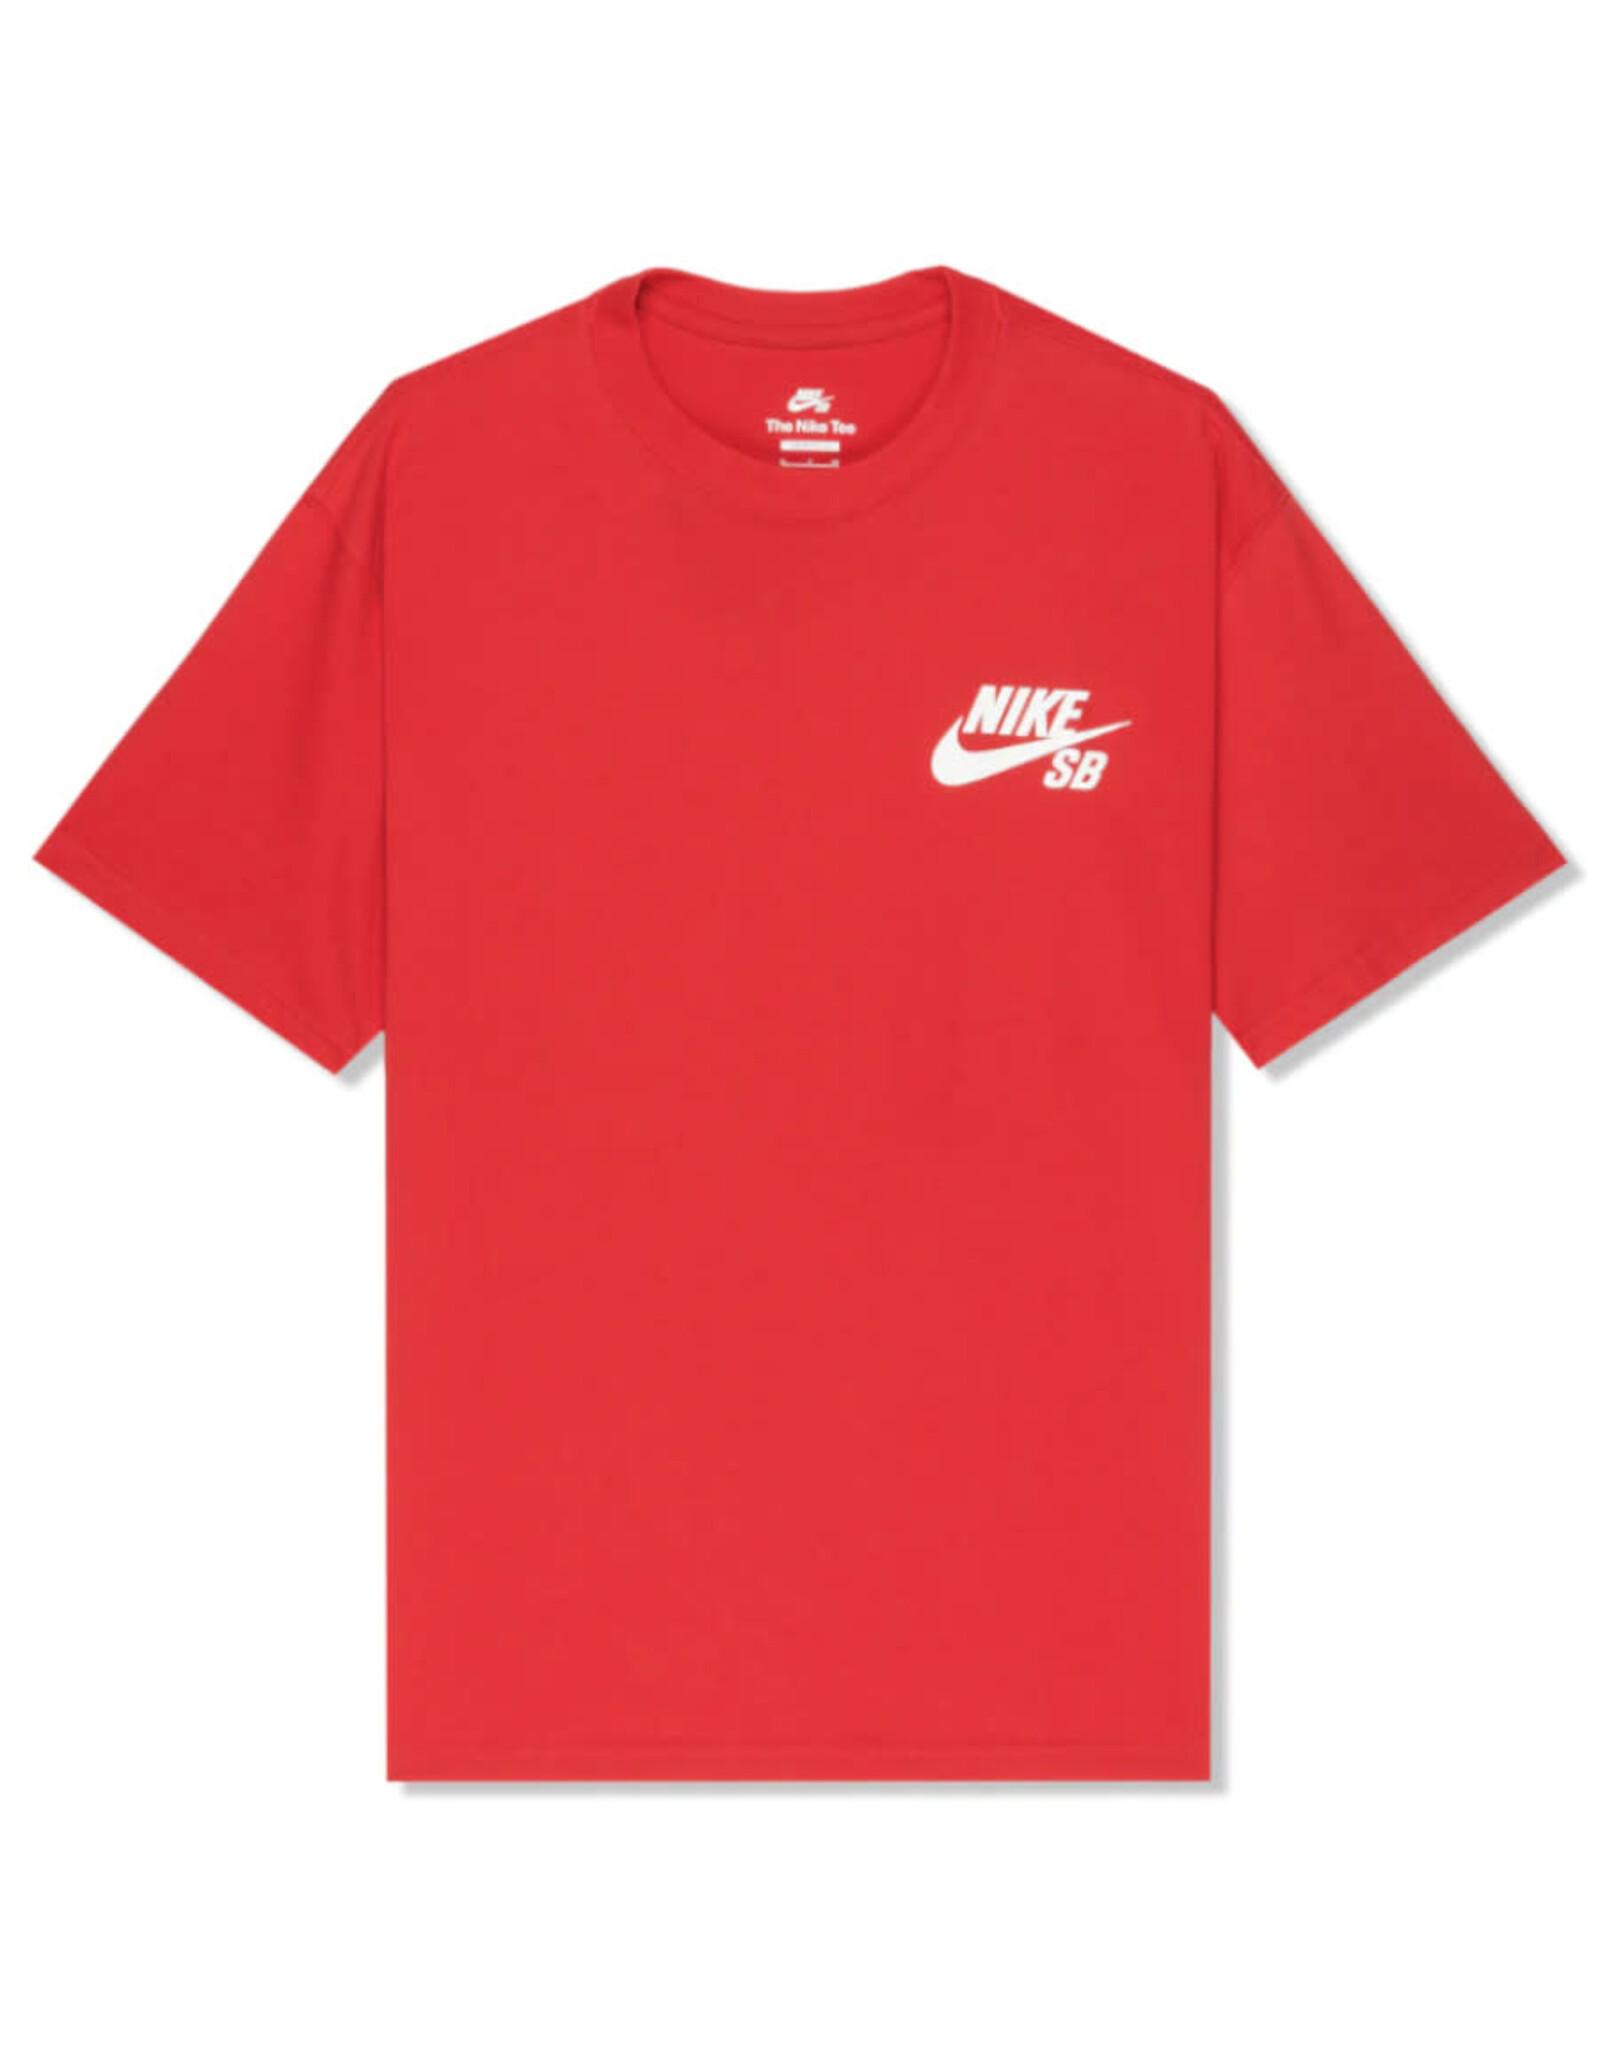 Nike SB Nike SB Tee Loose Fit Pocket Logo S/S (Red/White)